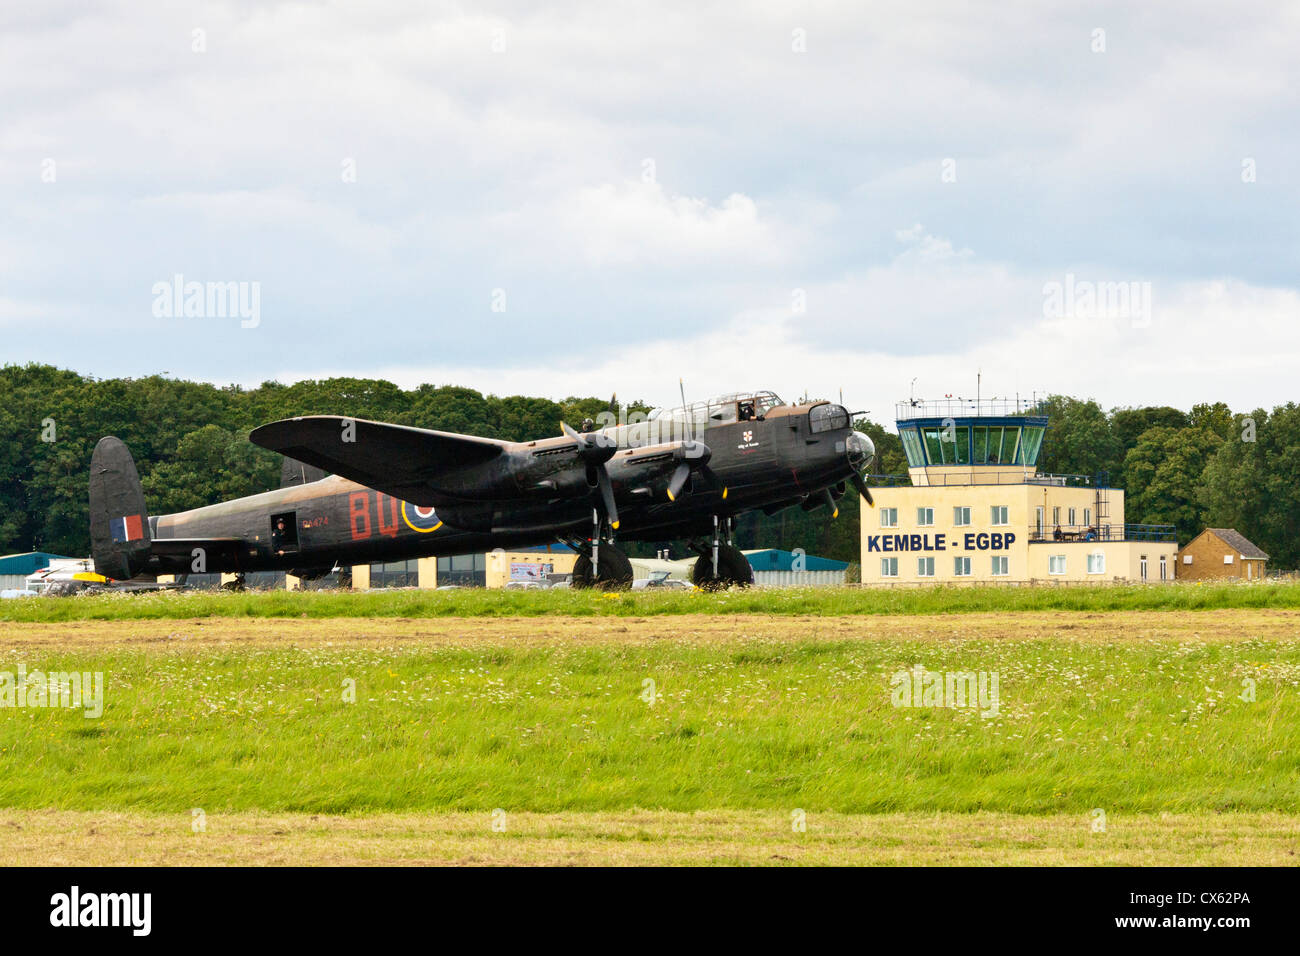 L'avion Avro Lancaster de la Battle of Britain Memorial Flight sur la piste passant le Kemble EGBP tour de contrôle. JMH6102 Banque D'Images